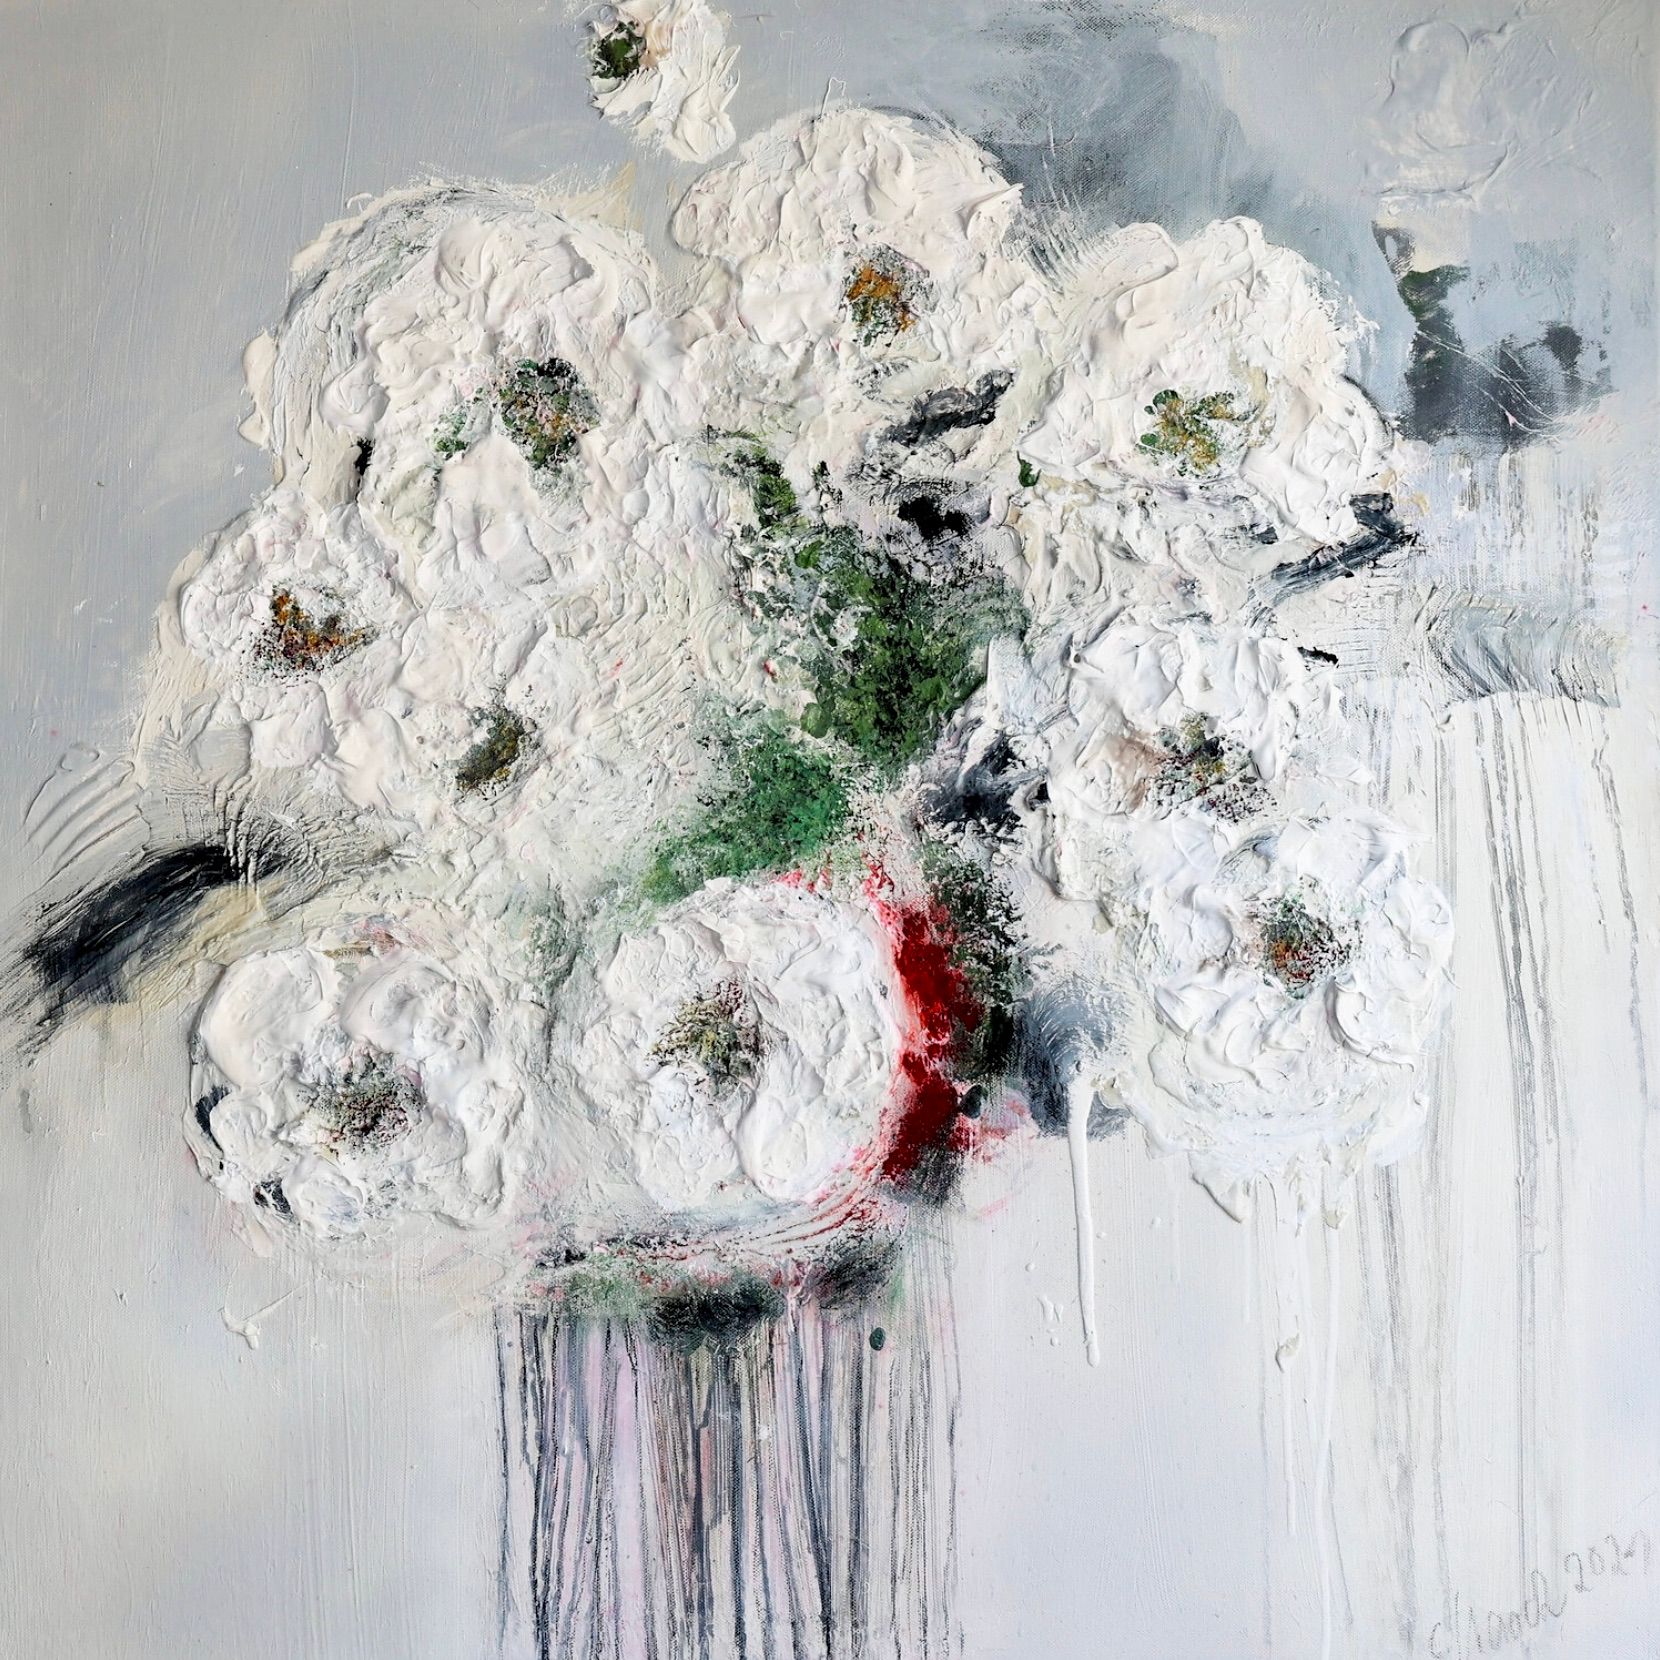 在克里斯塔-哈克的 "Im Rausch der Blumen 3 "表现主义抽象花卉画中，白色、米色、绿色和红色占主导地位。